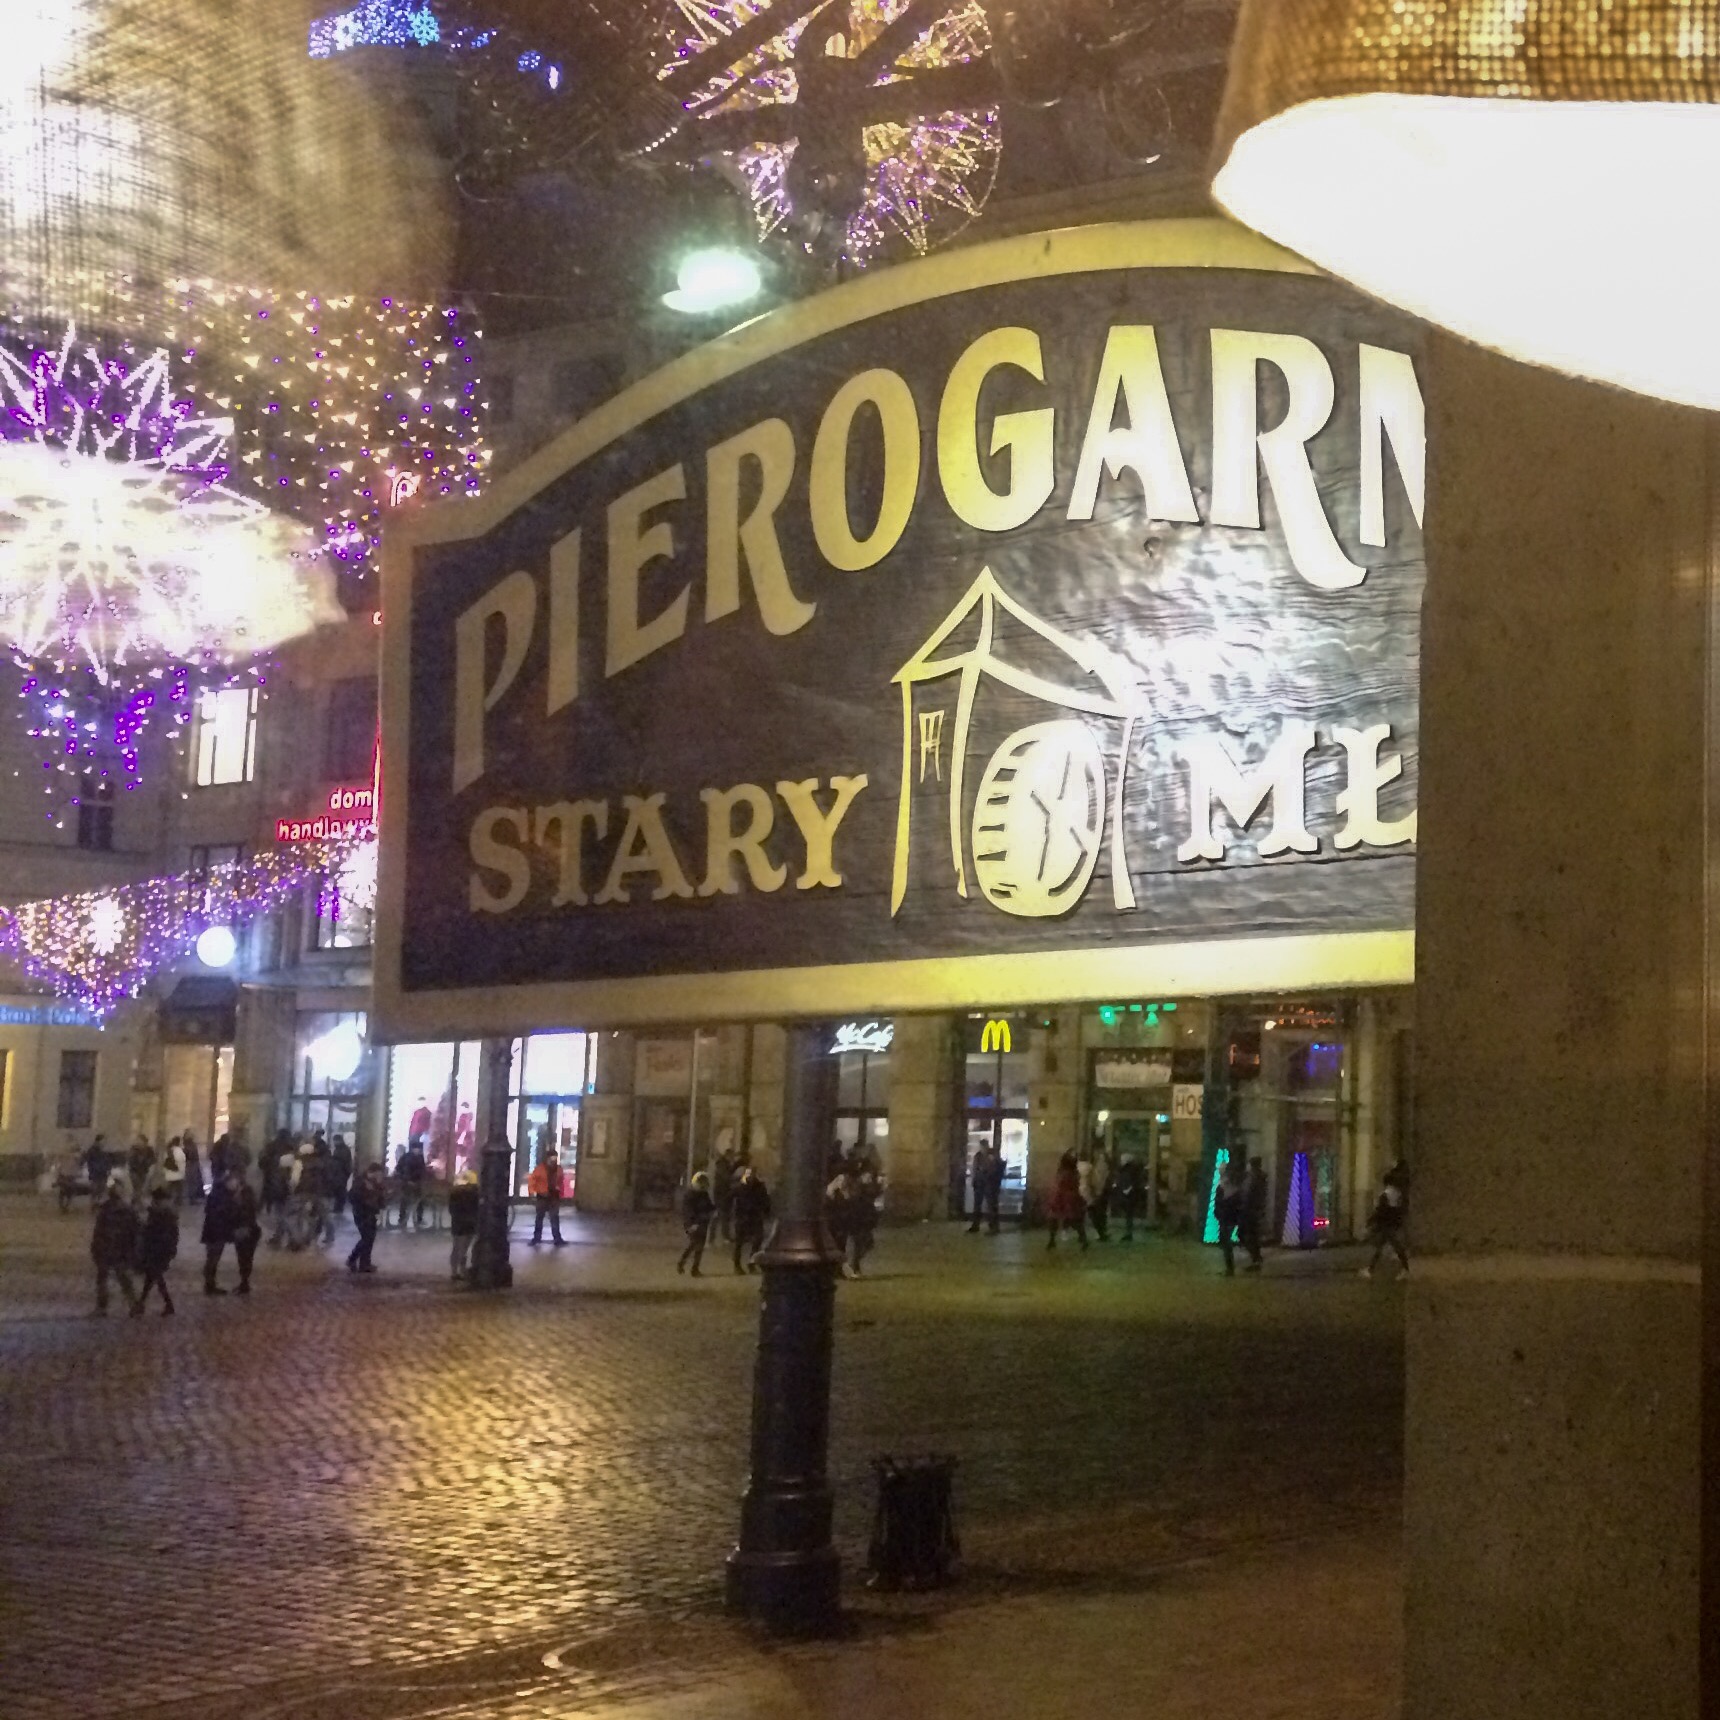 Pierogarnia Stary Młyn, Wrocław, Poland